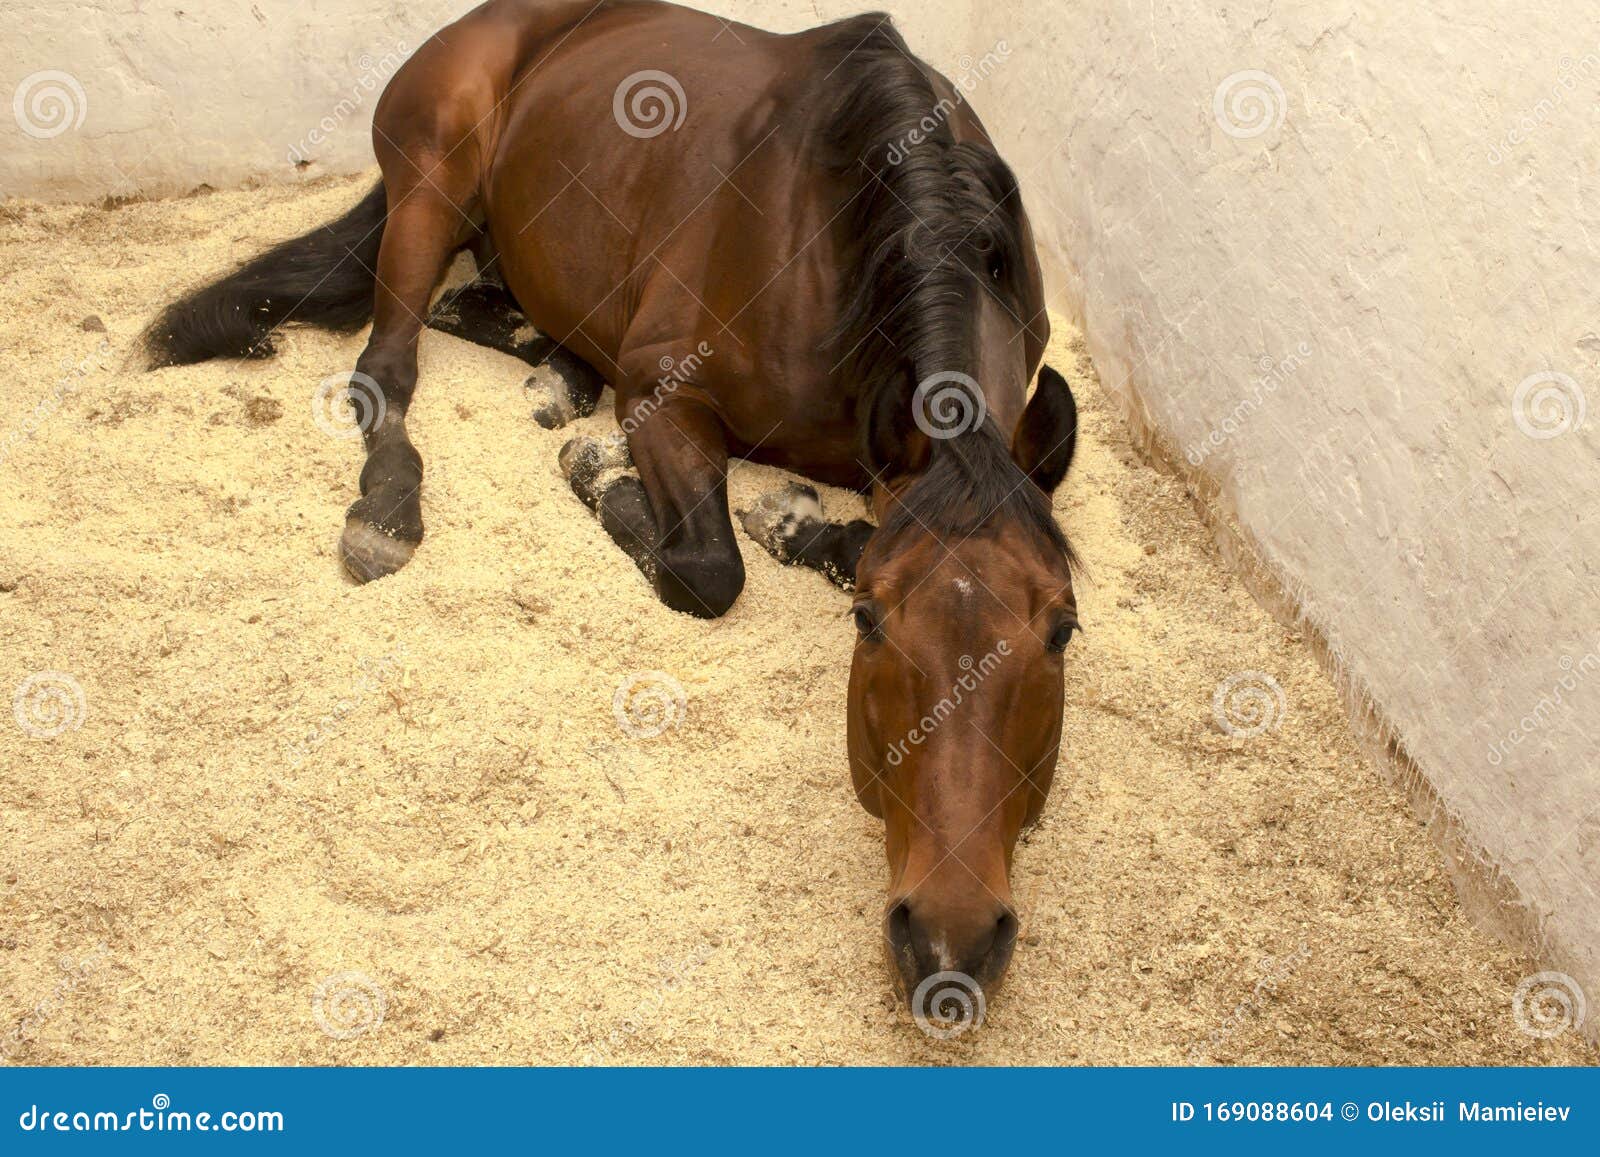 Sorrel Horse Zit Op in Een Kraag Van Zijn Stock Foto - Image of kastanje, 169088604